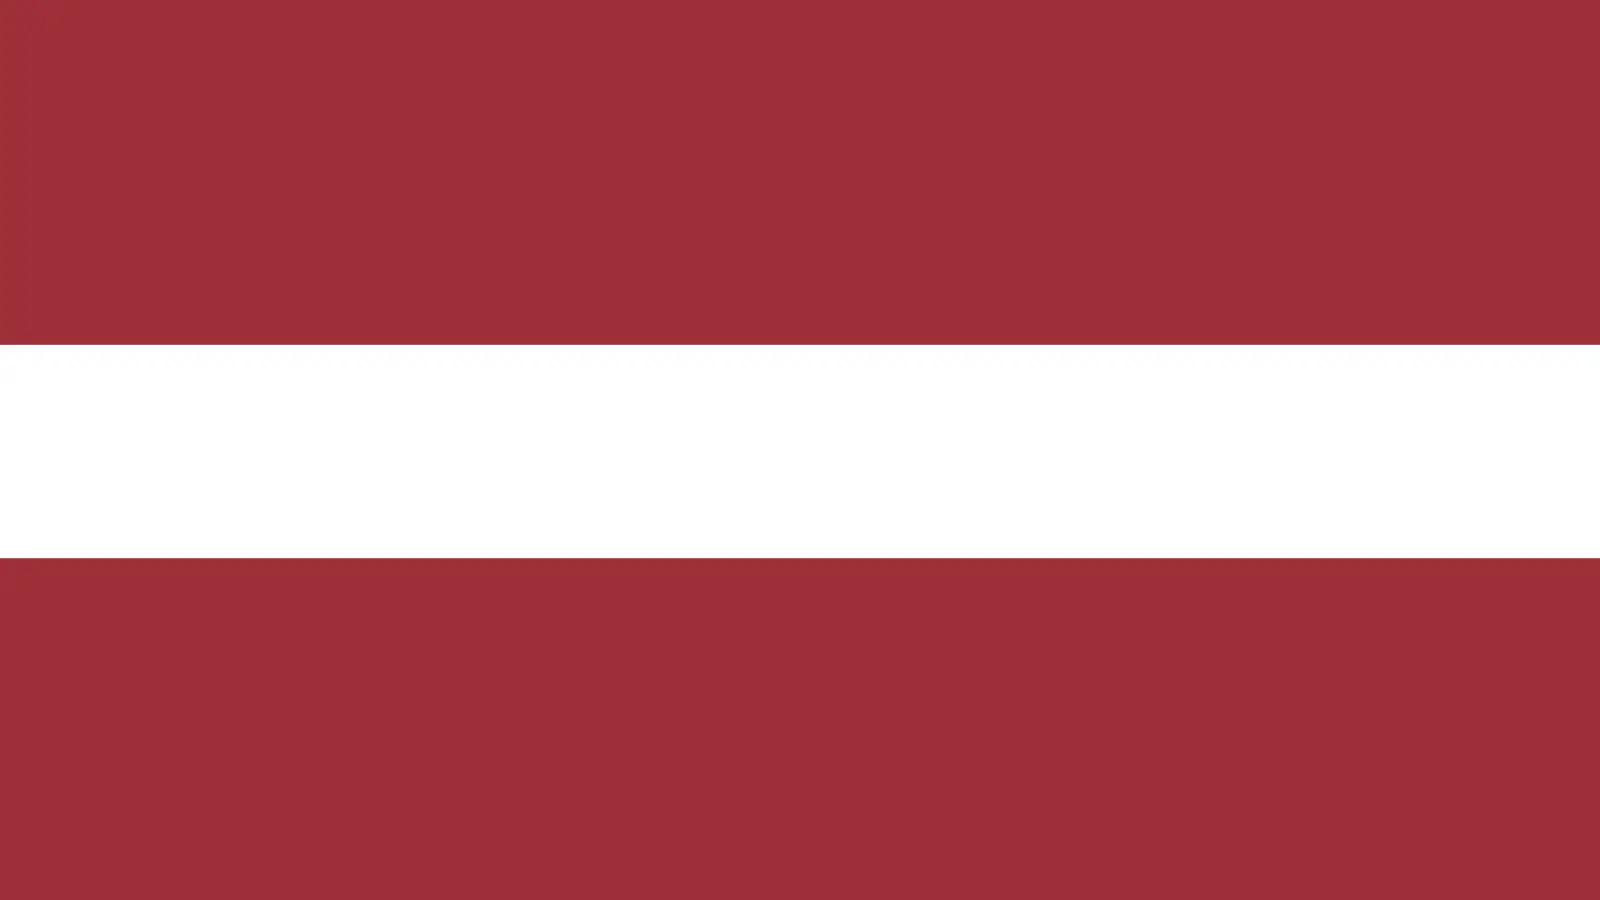 Letonia vrea sa Limiteze Folosirea Limbii Ruse la Locurile de Munca, in Spatii Publice